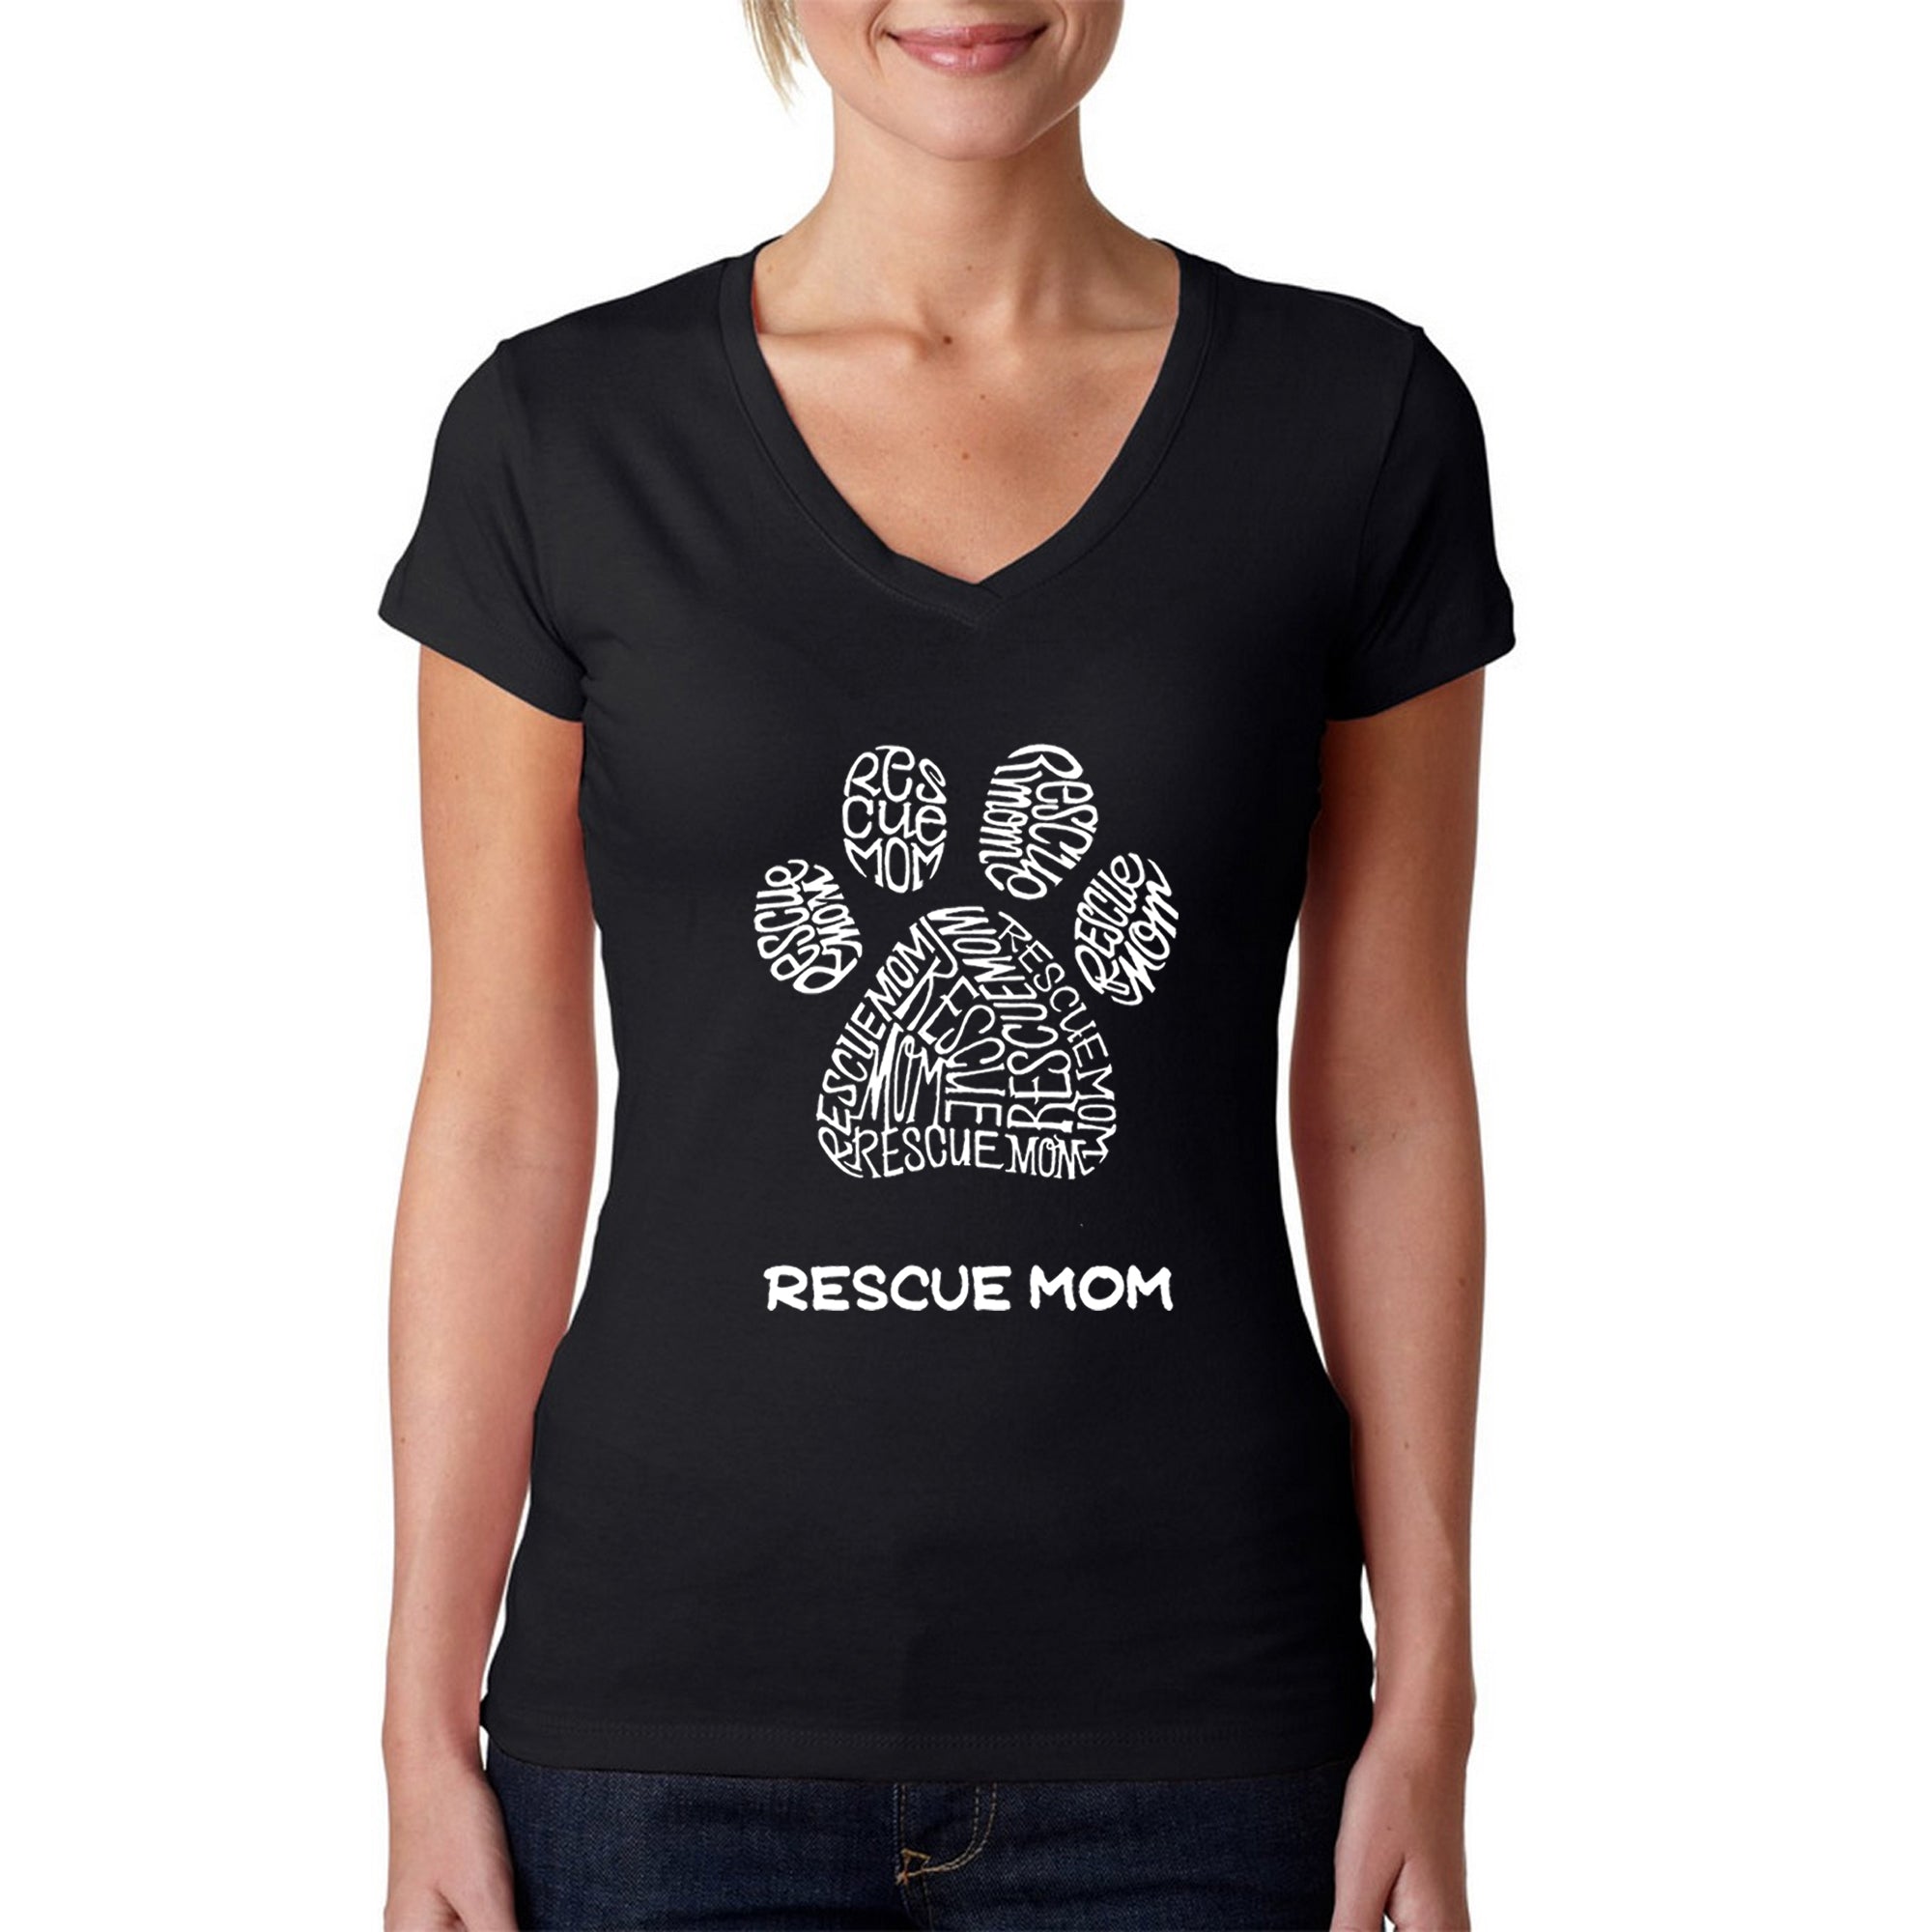 Rescue Mom - Women's Word Art V-Neck T-Shirt - Black - Large